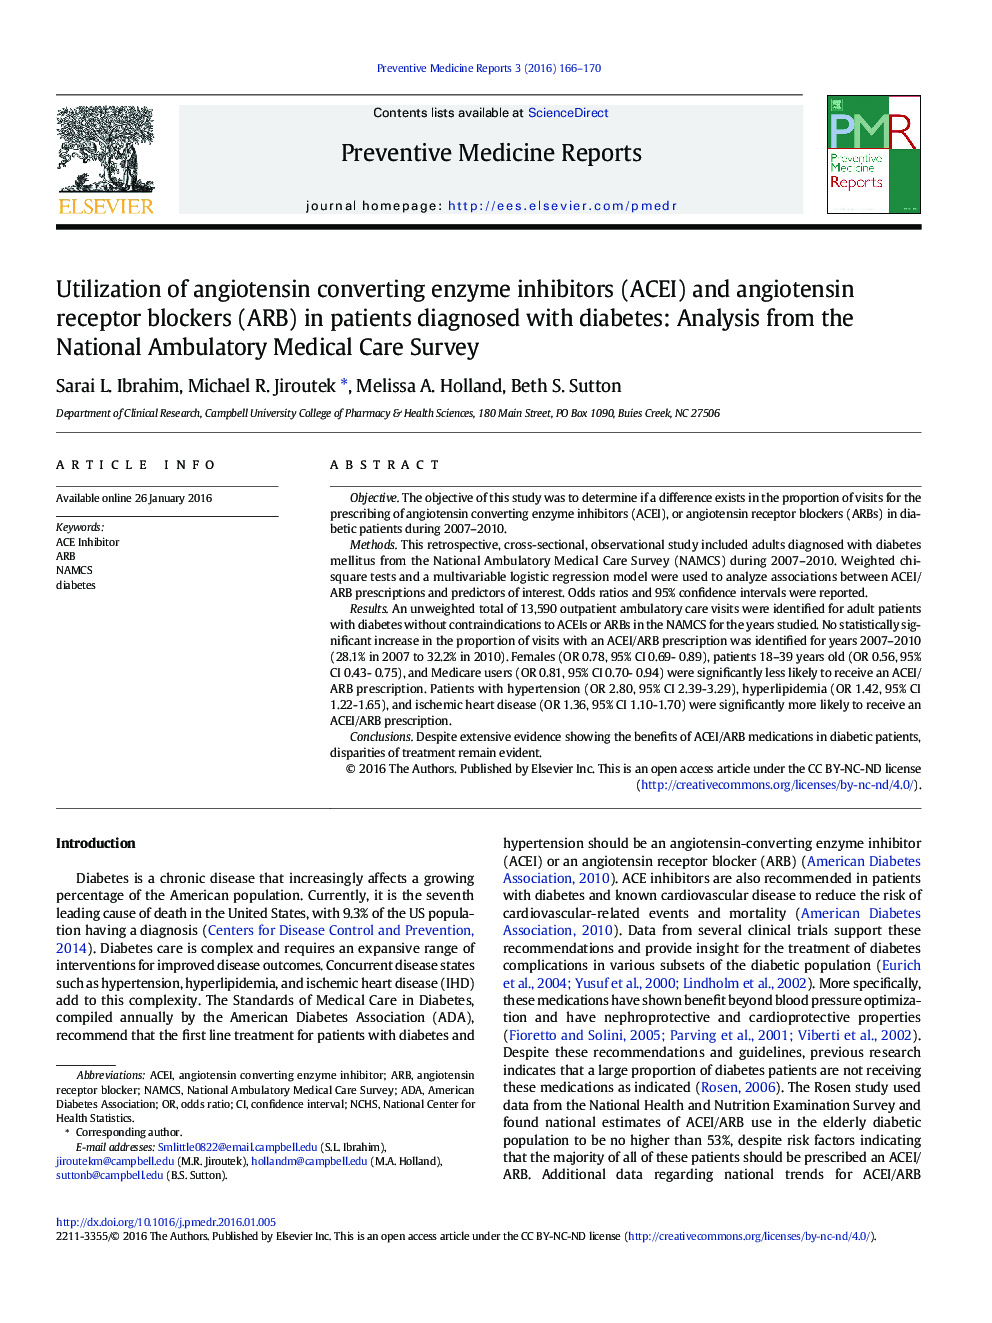 استفاده از آنژیوتانسین مهارکننده های آنزیم مبدل (ACEI) و مسدود کننده های گیرنده آنژیوتانسین (ARB) در بیماران مبتلا به دیابت: تجزیه و تحلیل از سازمان ملی مراقبت های سیار پزشکی